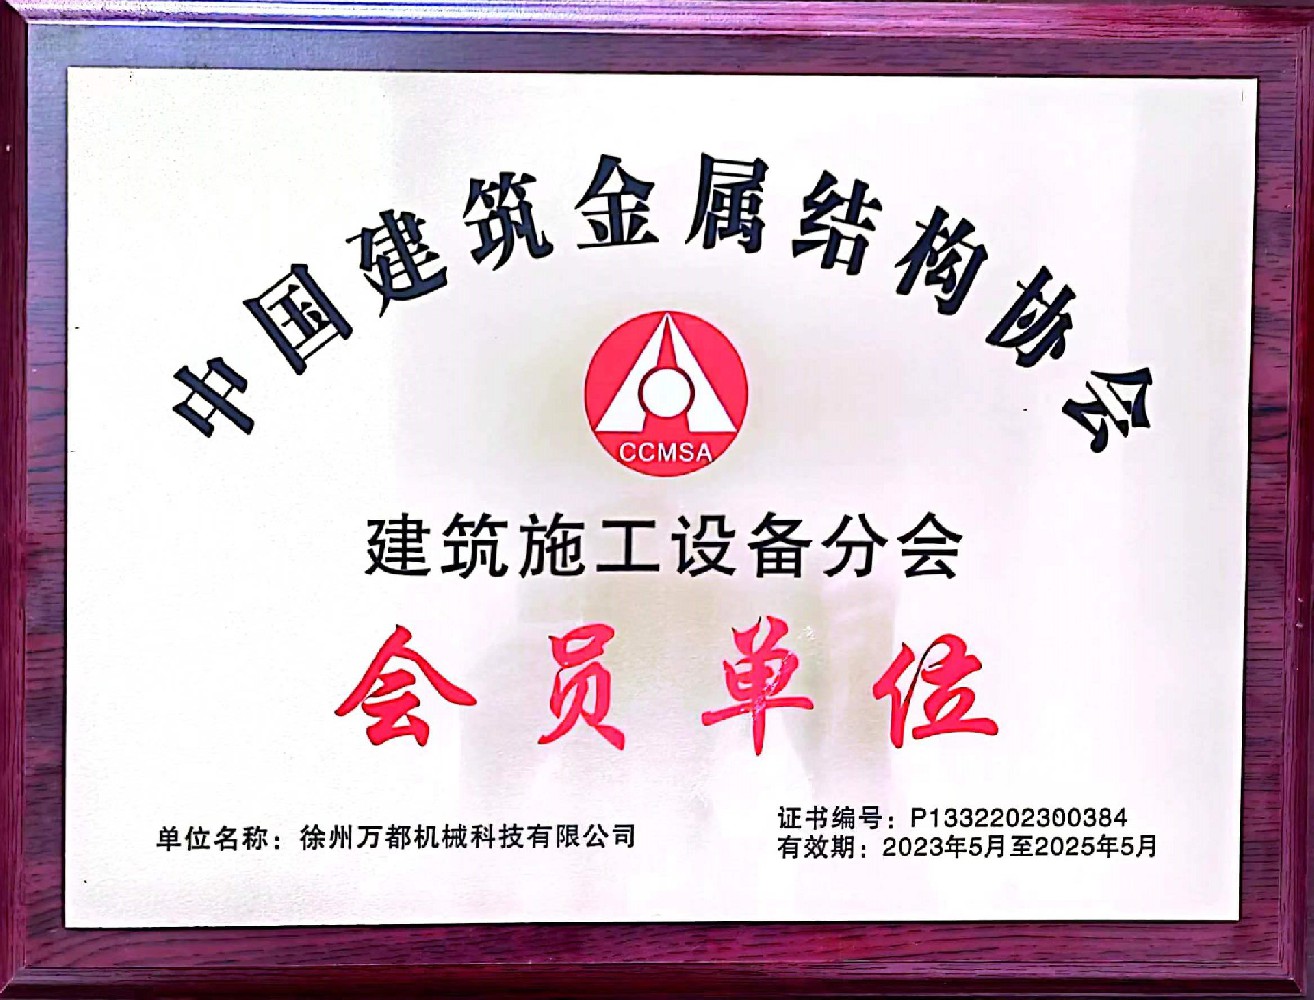 中国建筑金属结构协会会员单位